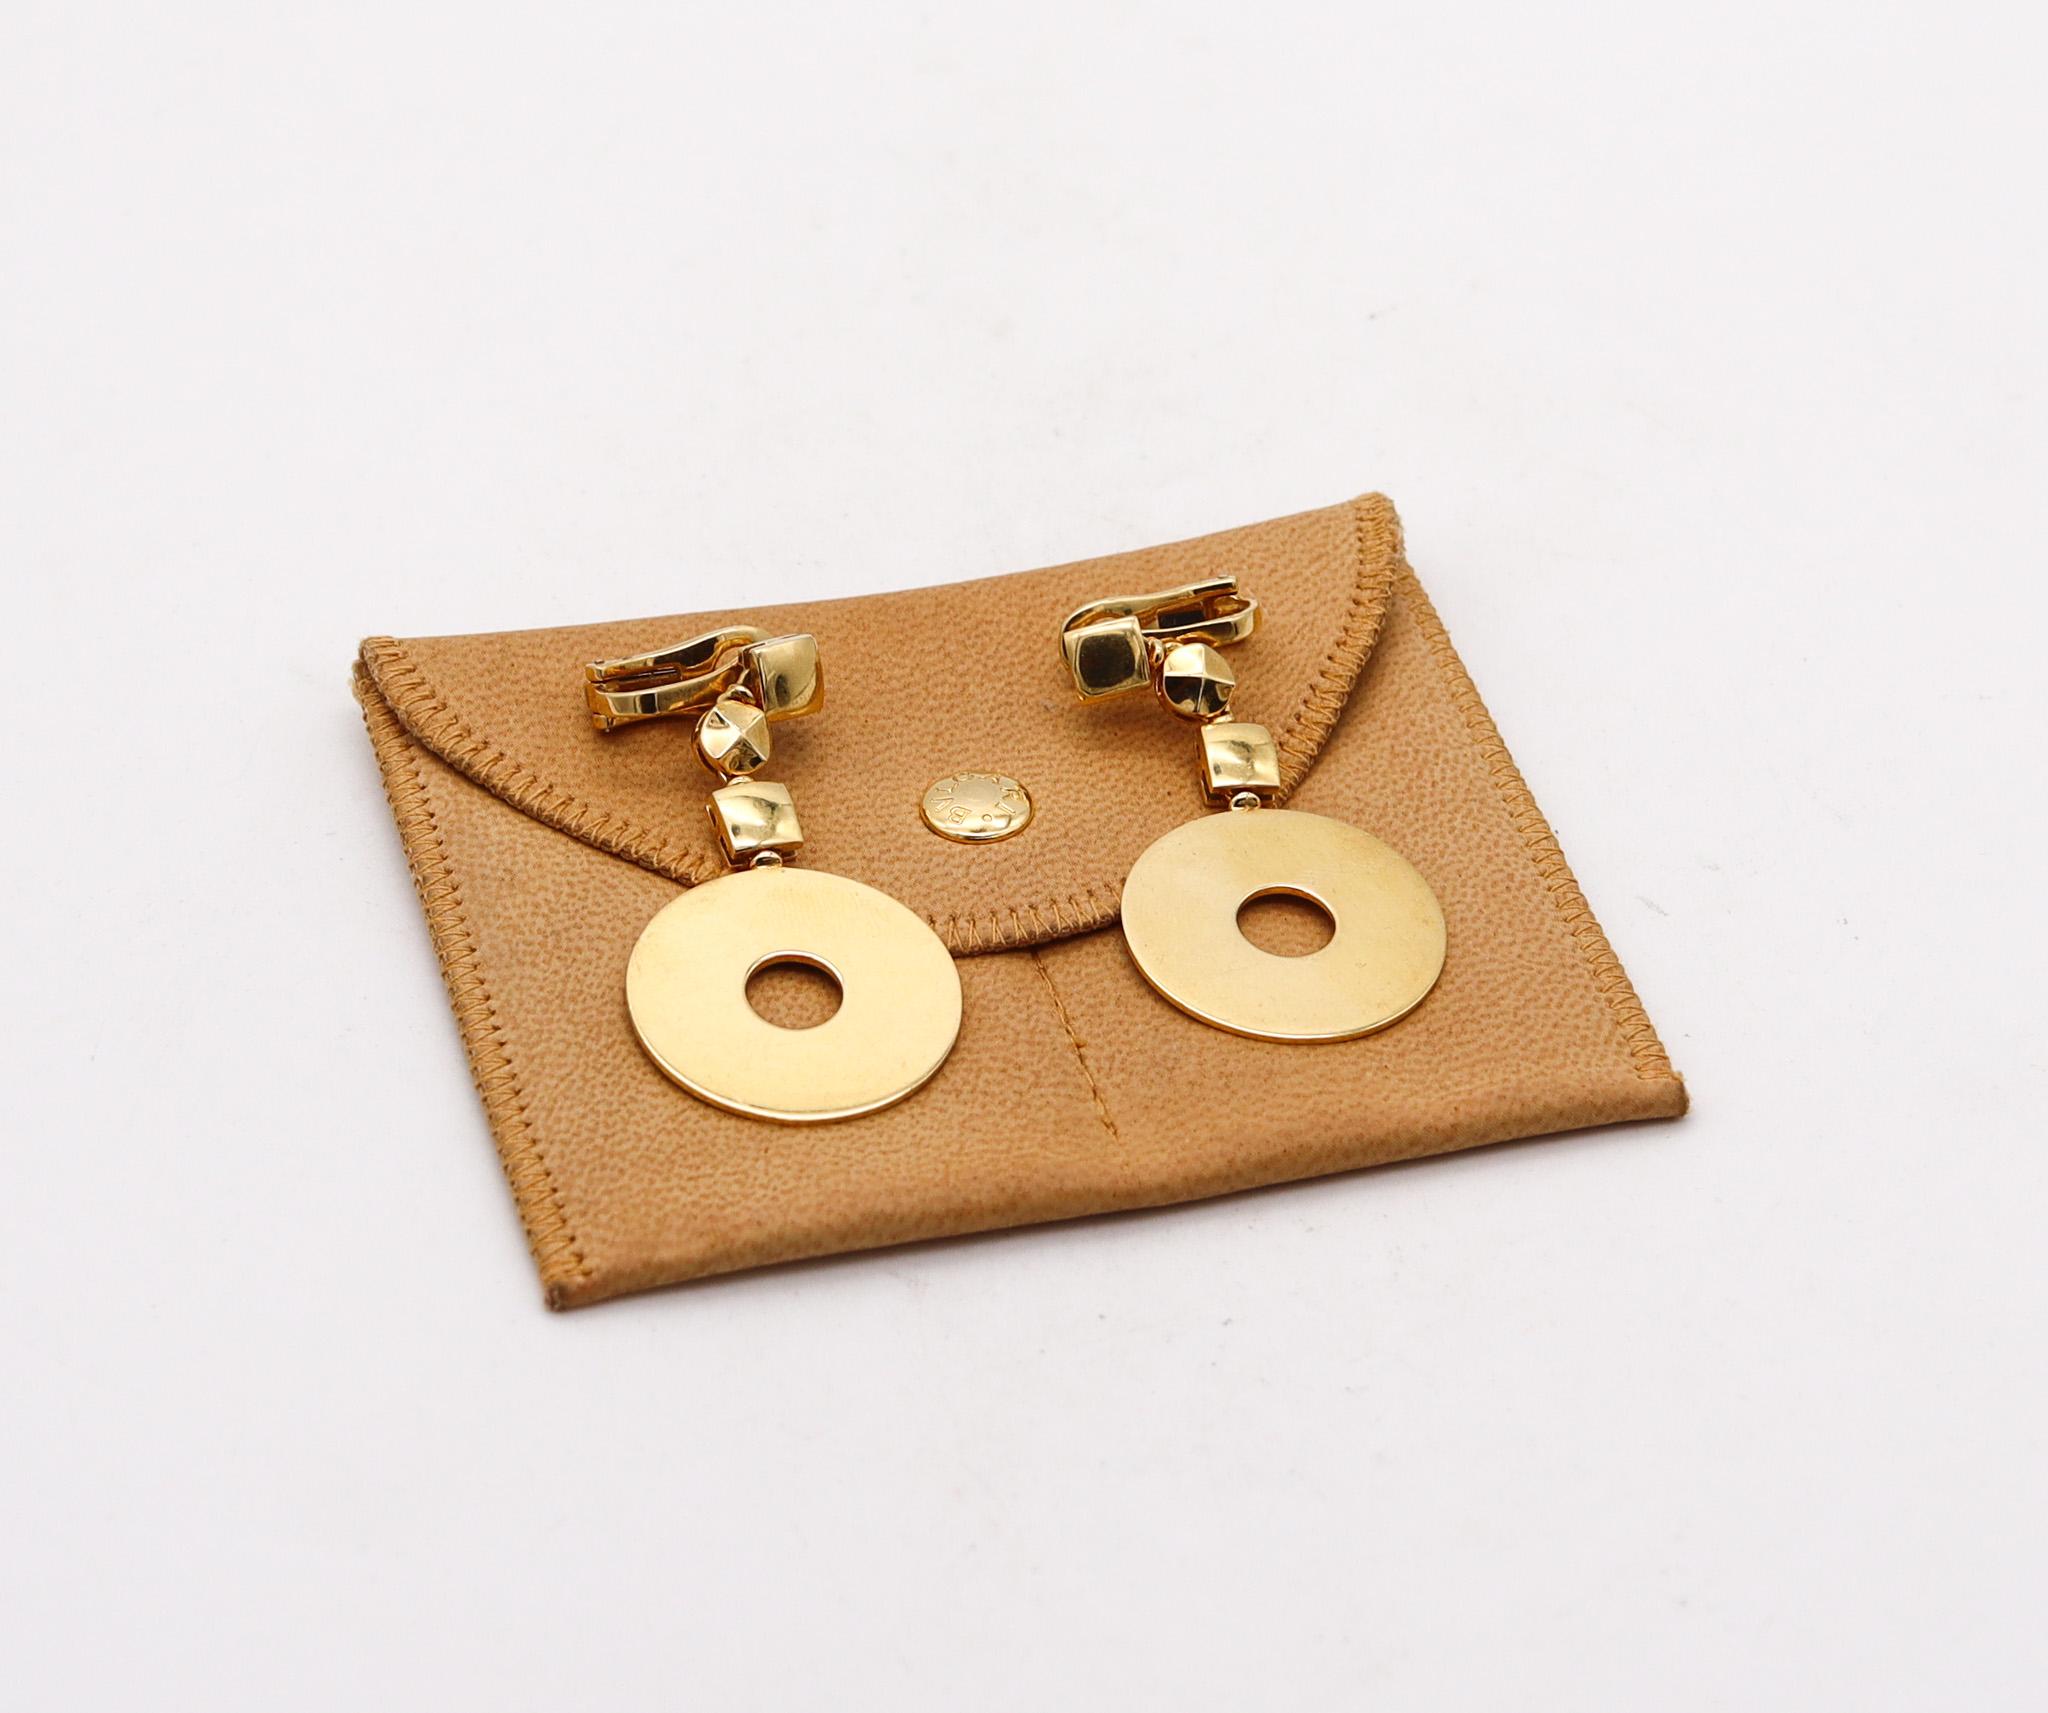 Von Bvlgari entworfene Ohrringe in Tropfenform.

Seltene geometrische Ohrringe, die in Rom, Italien, vom Schmuckhaus Bvlgari entworfen wurden. Diese modernen Ohrringe sind aus massivem 18-karätigem Gelbgold mit hochglanzpolierter Oberfläche